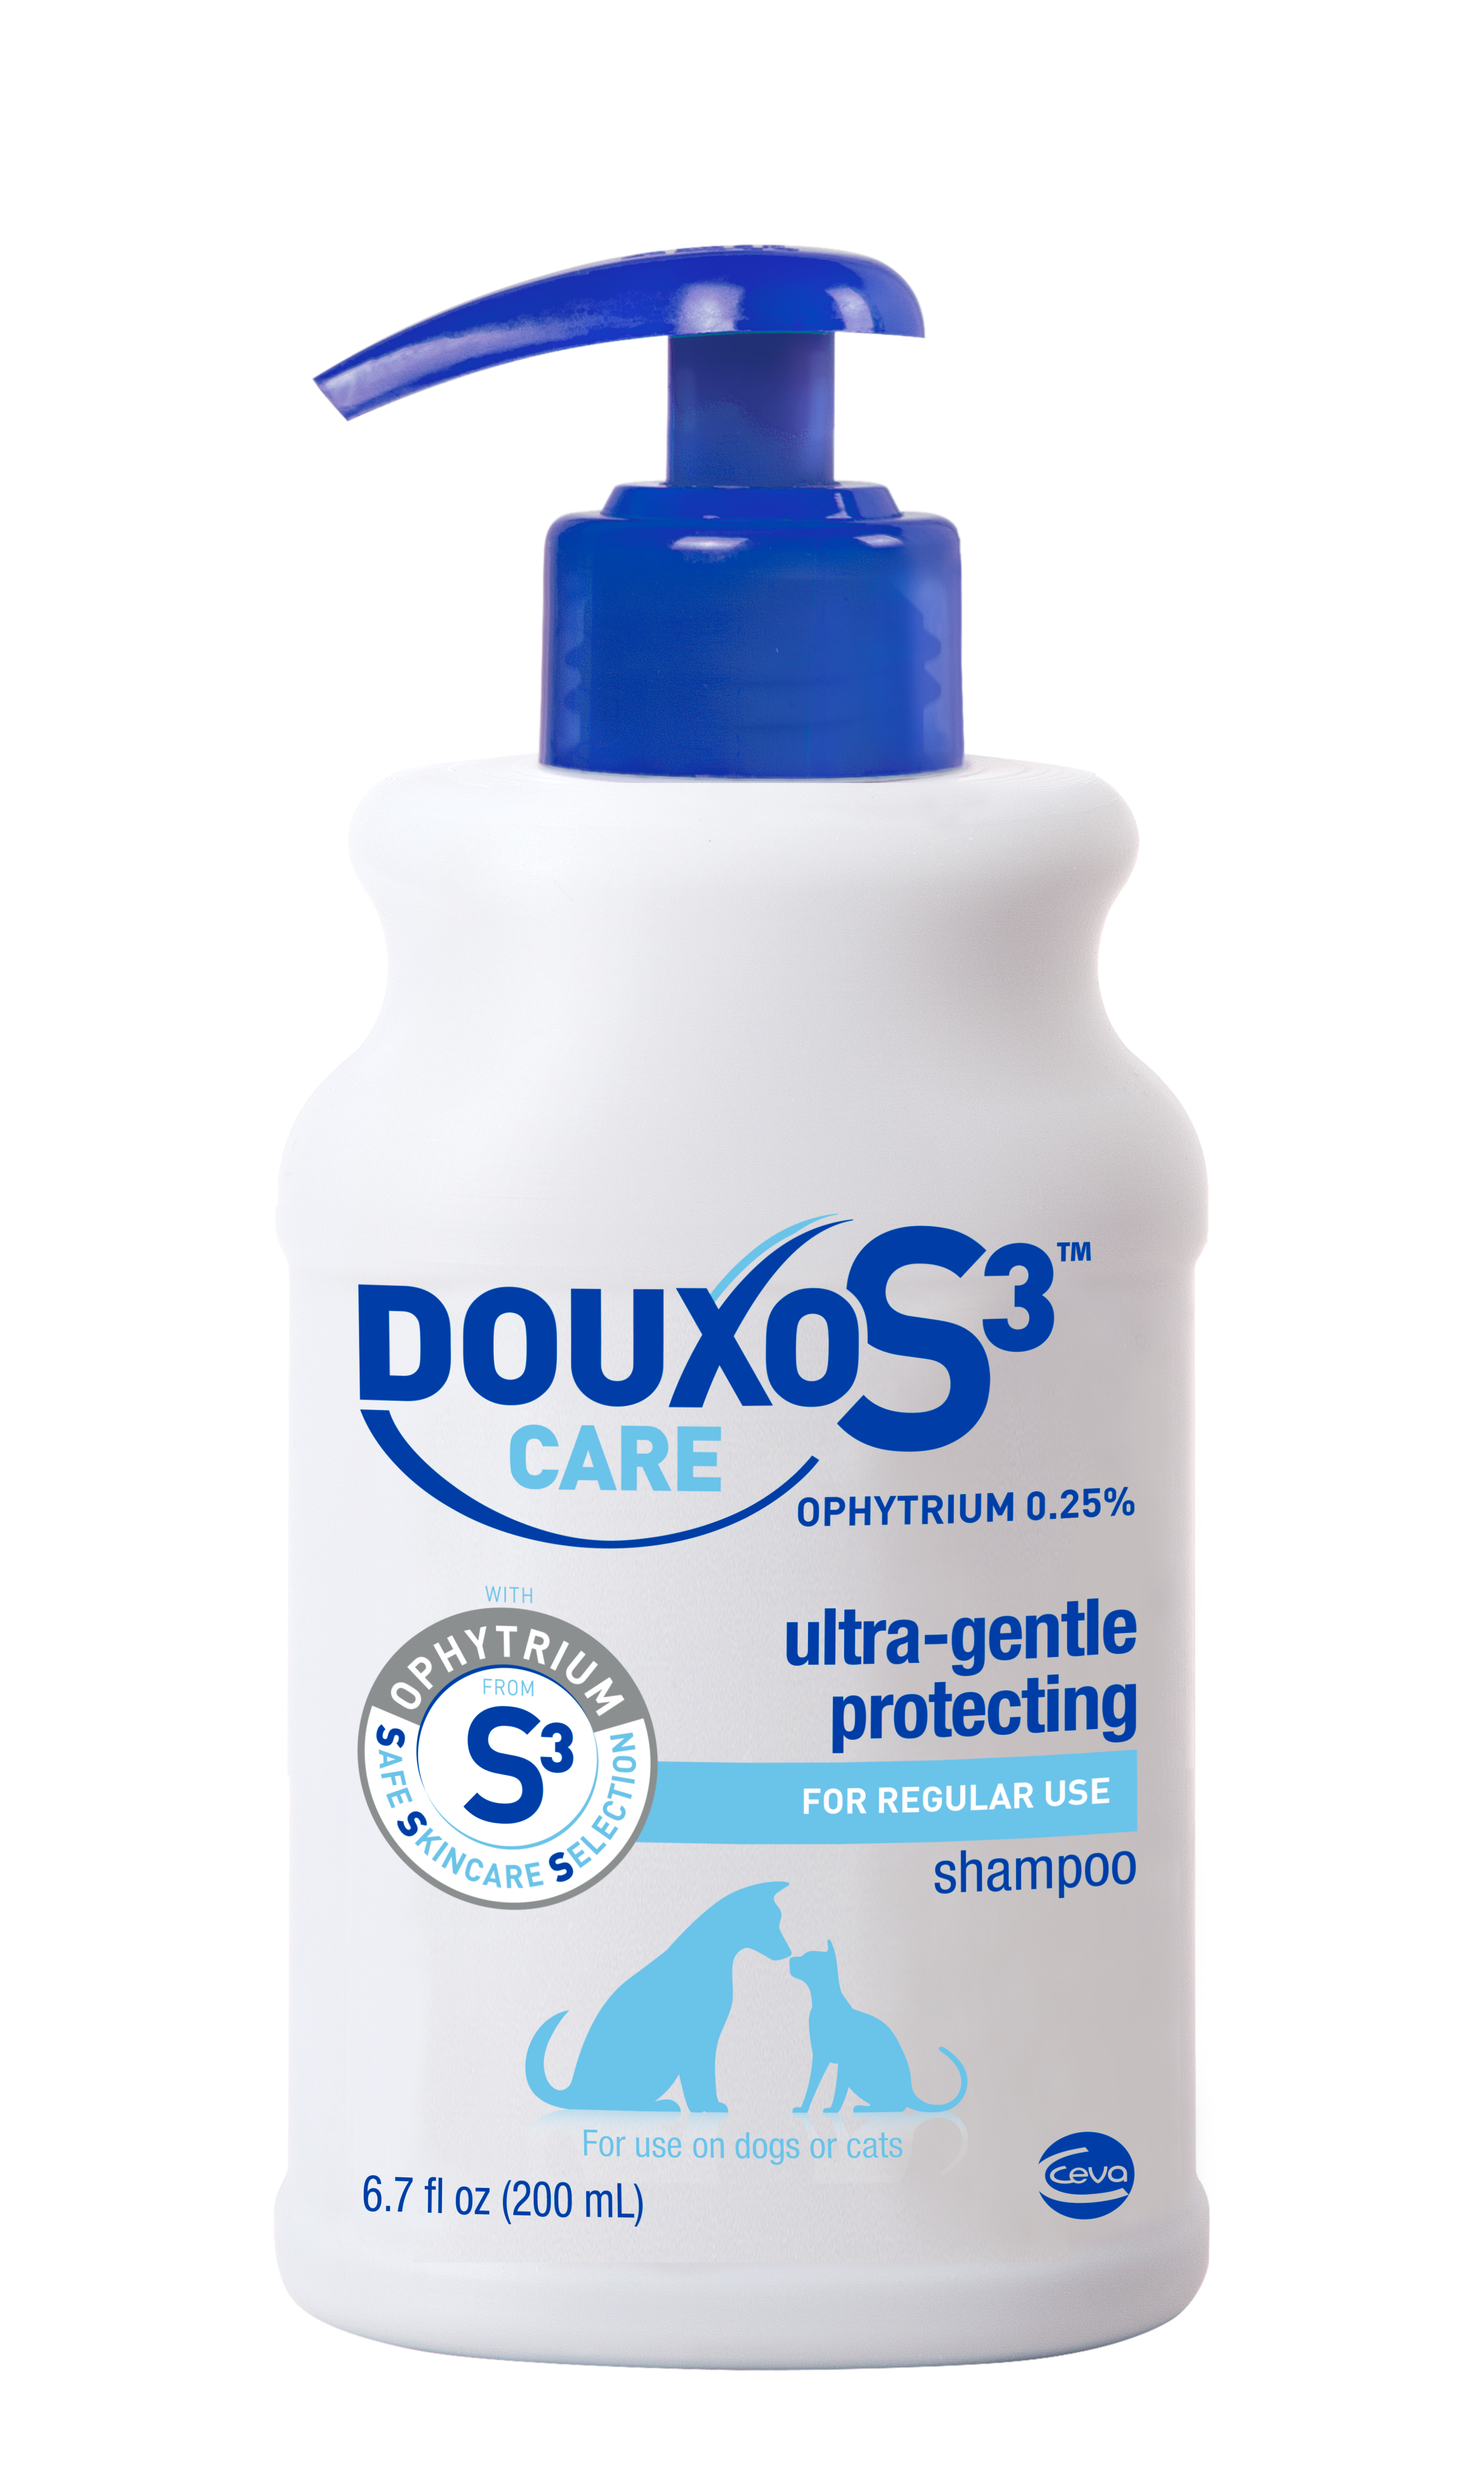 /-/media/2/project/vca/shop/product-images/d/douxo-s3-care-shampoo/10d98210ea/douxo_care_shamp_s3_200ml.ashx